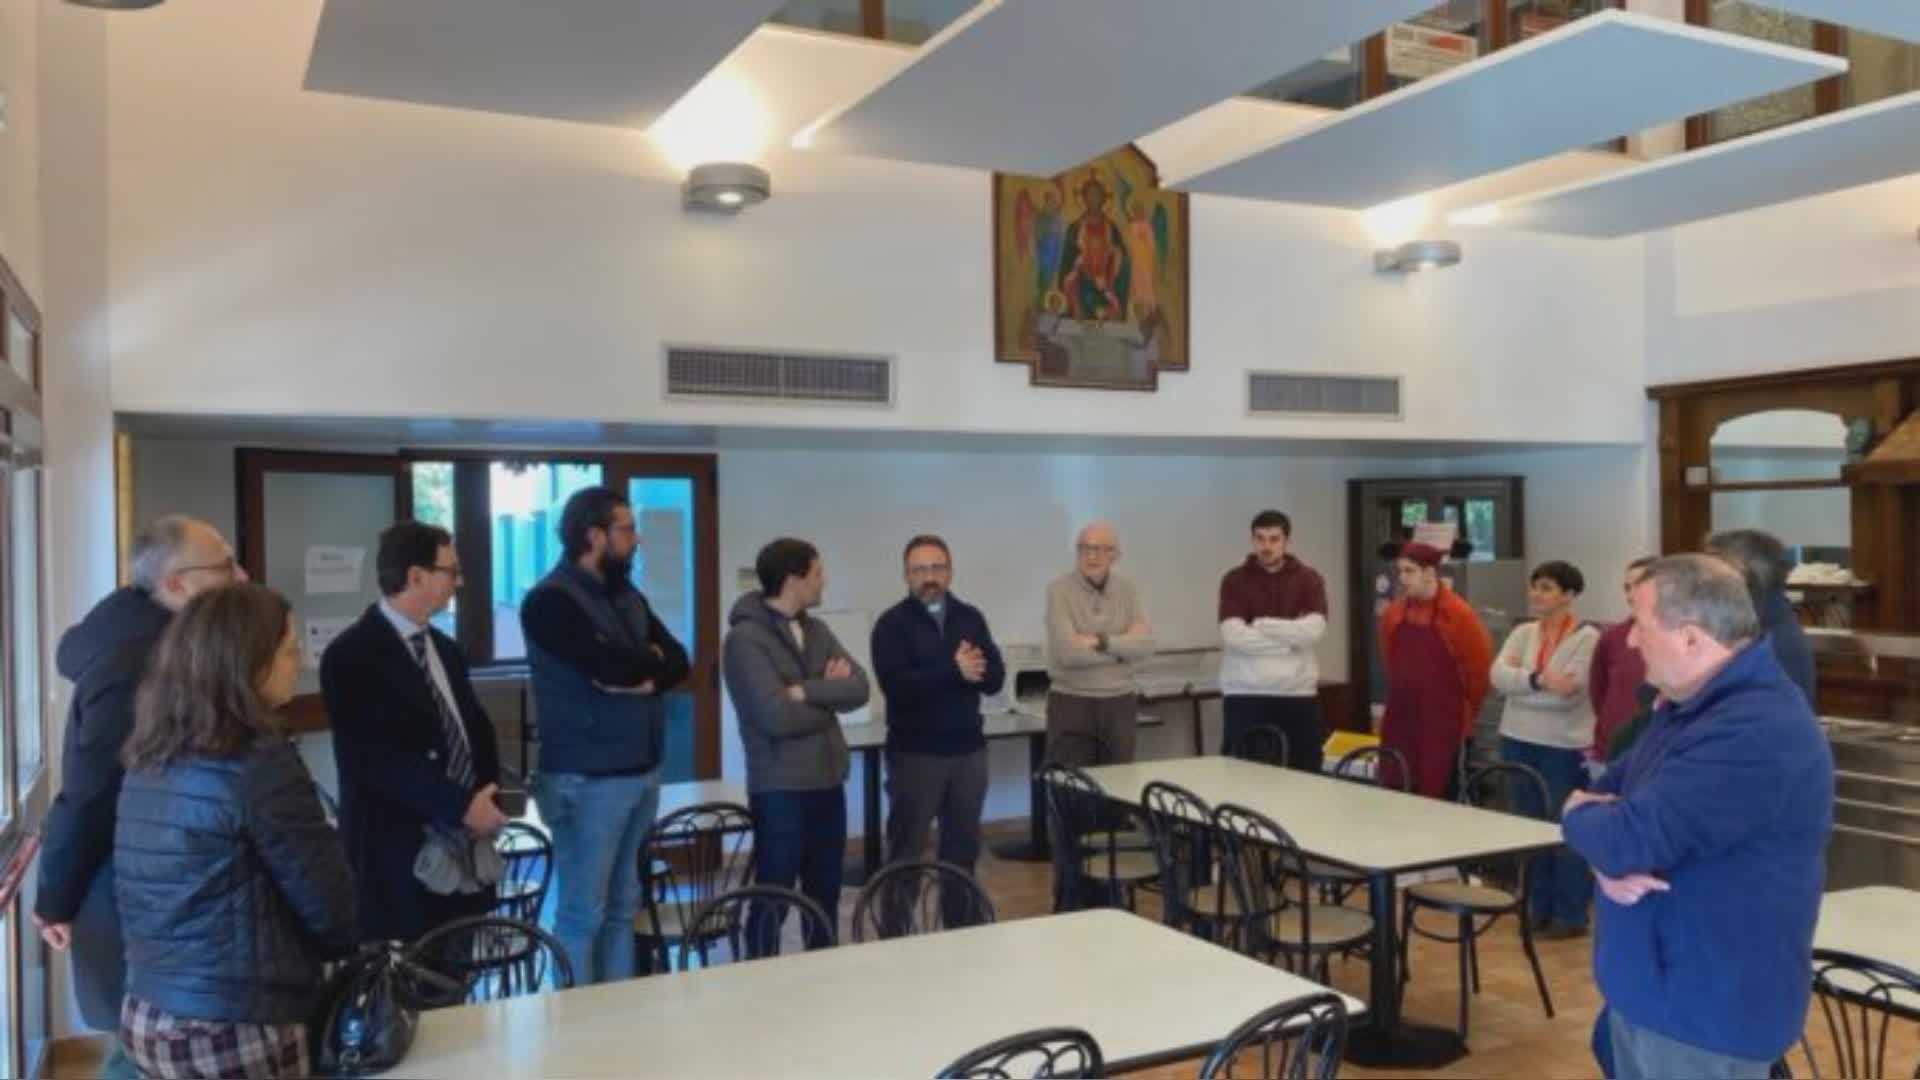 Donati pannelli fonoassorbenti a mensa Caritas Perugia